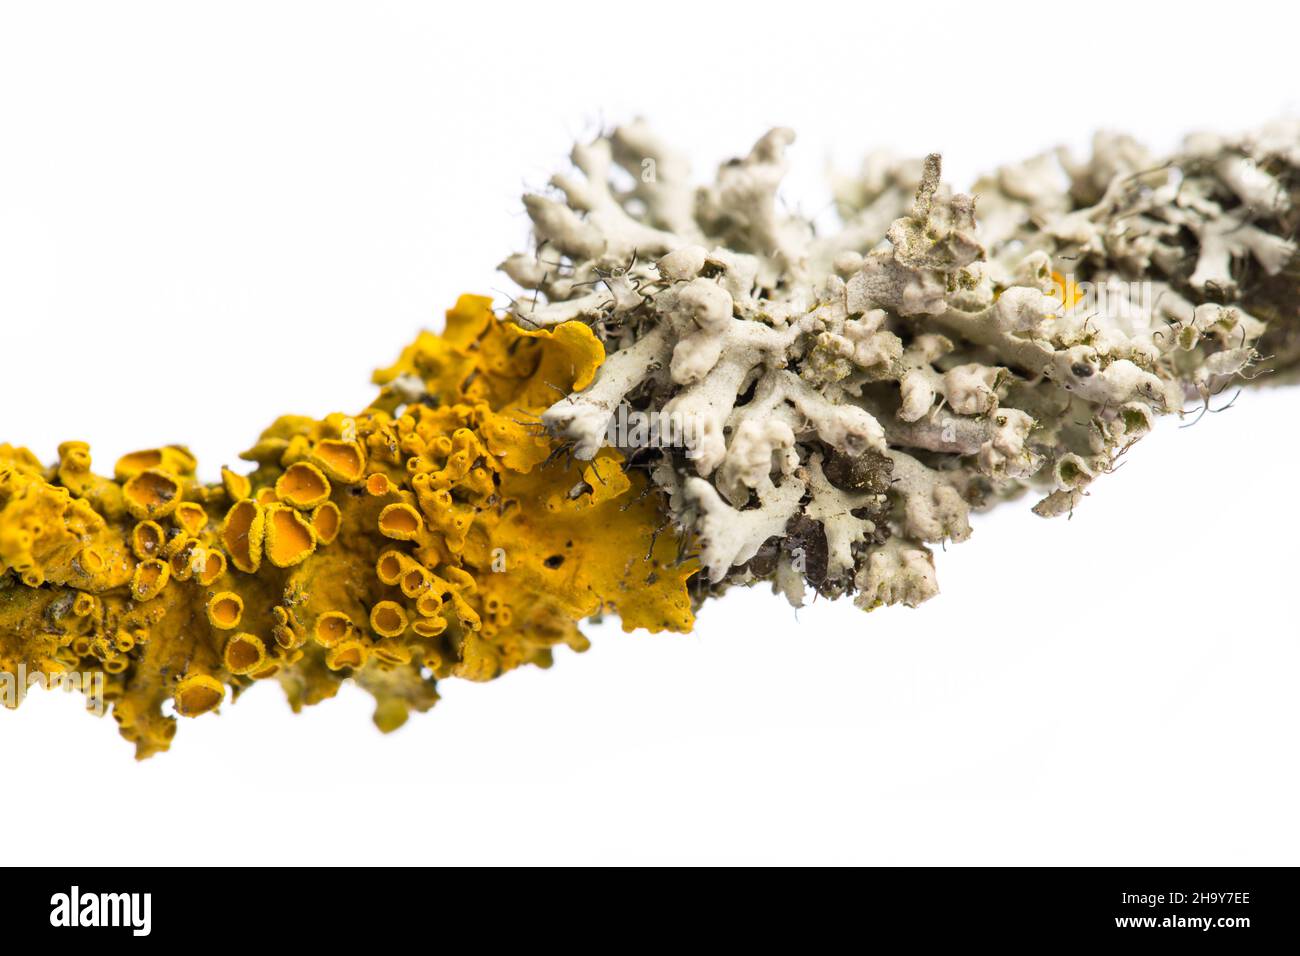 lichen, jaune, gris, branche, branche,arbre, ensemble, nature, contre les autres, pousse,plantes, surcroissance, fumée, champignon, algues,moule, forme, structure Banque D'Images